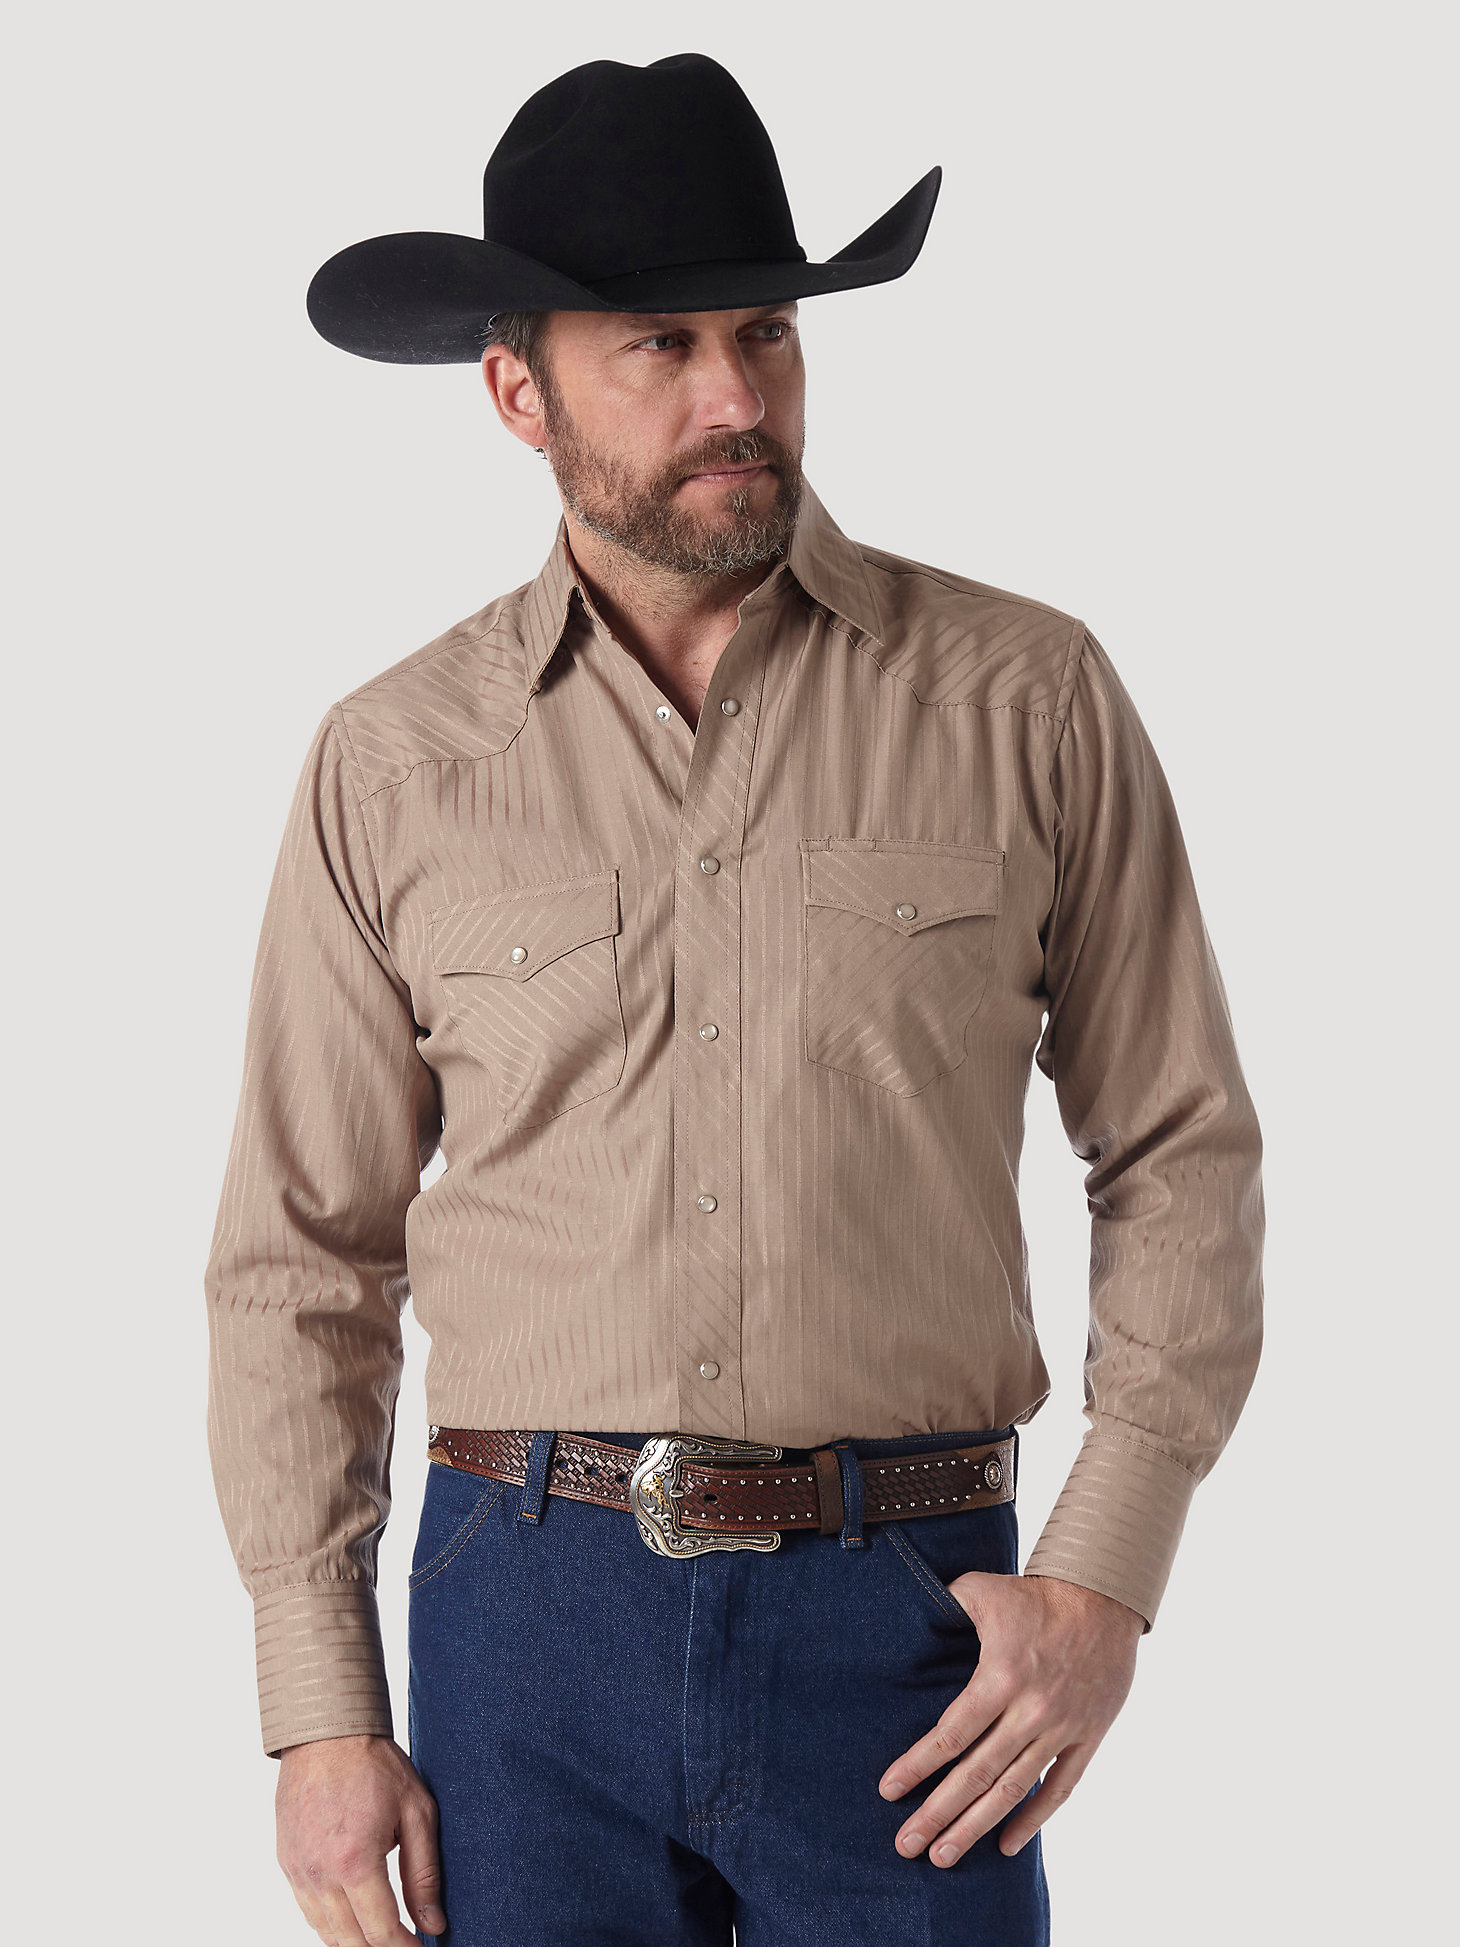 Descubrir 69+ imagen wrangler western shirts for men